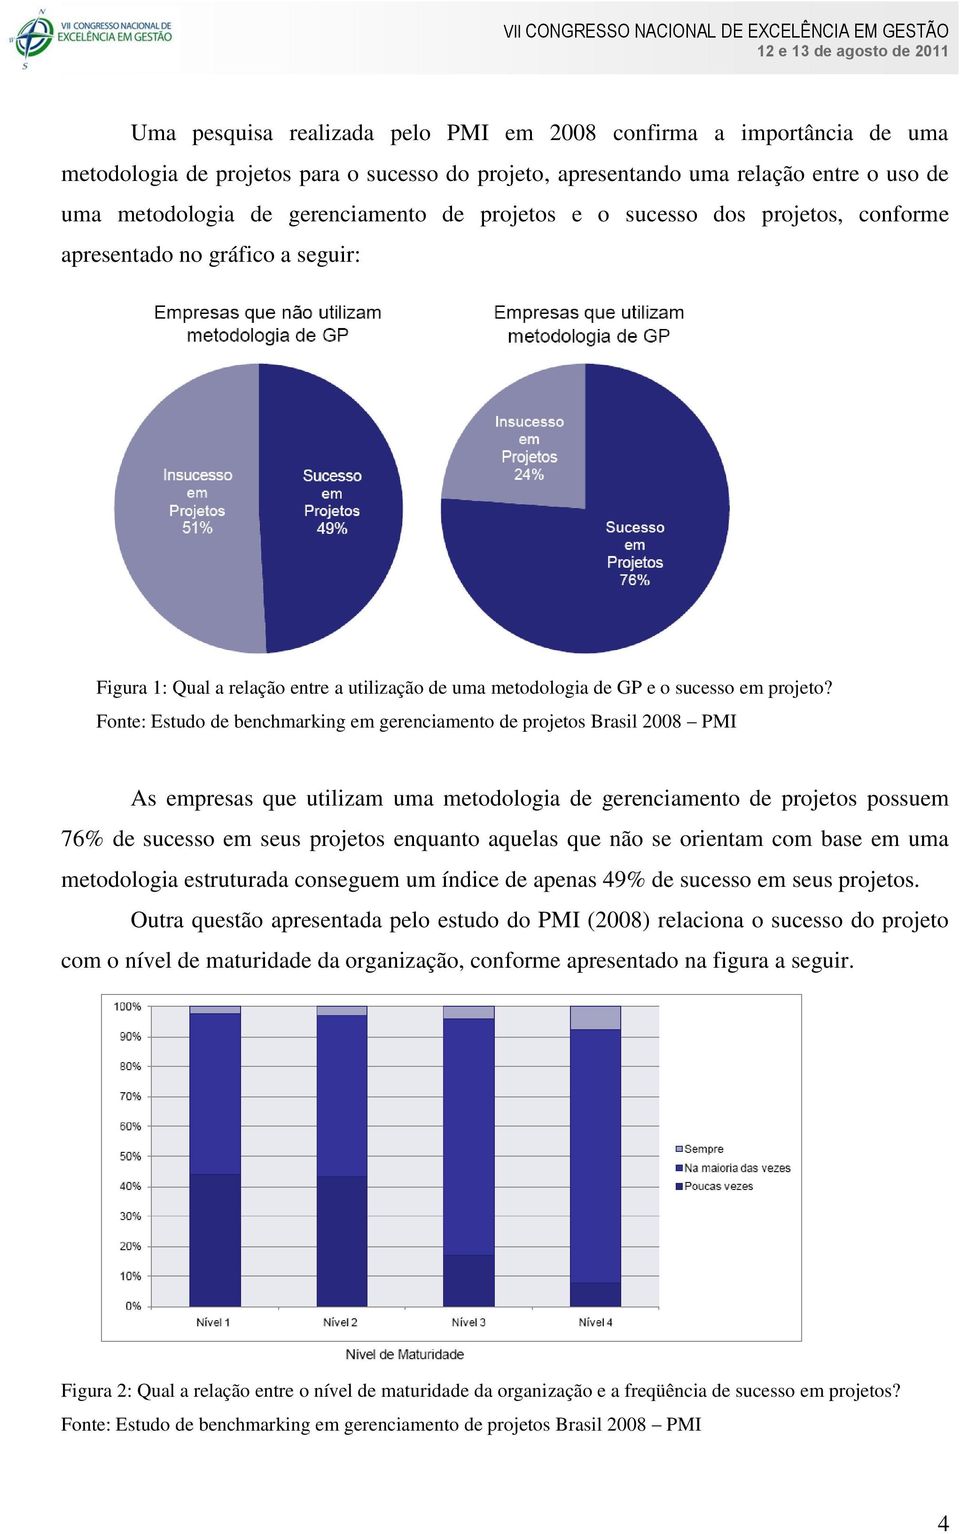 Fonte: Estudo de benchmarking em gerenciamento de projetos Brasil 2008 PMI As empresas que utilizam uma metodologia de gerenciamento de projetos possuem 76% de sucesso em seus projetos enquanto